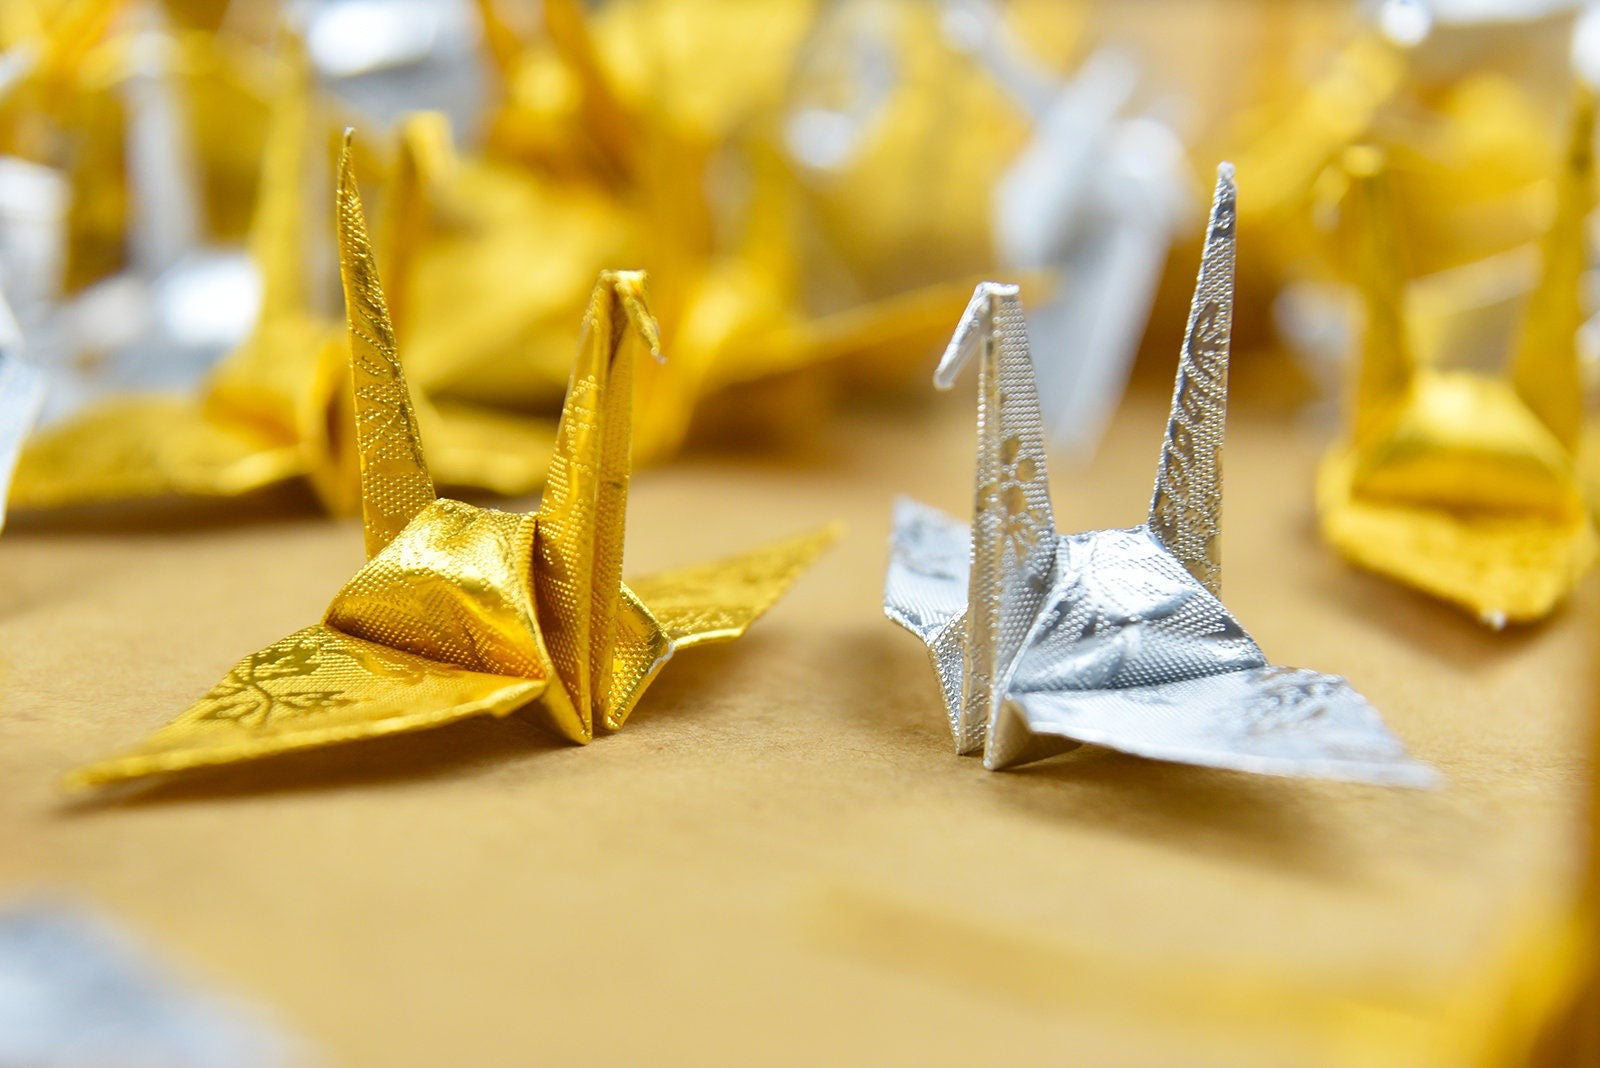 100 gru origami - oro e argento con motivo a rose - 7,5 cm (3 pollici) - per decorazioni di nozze, matrimoni giapponesi